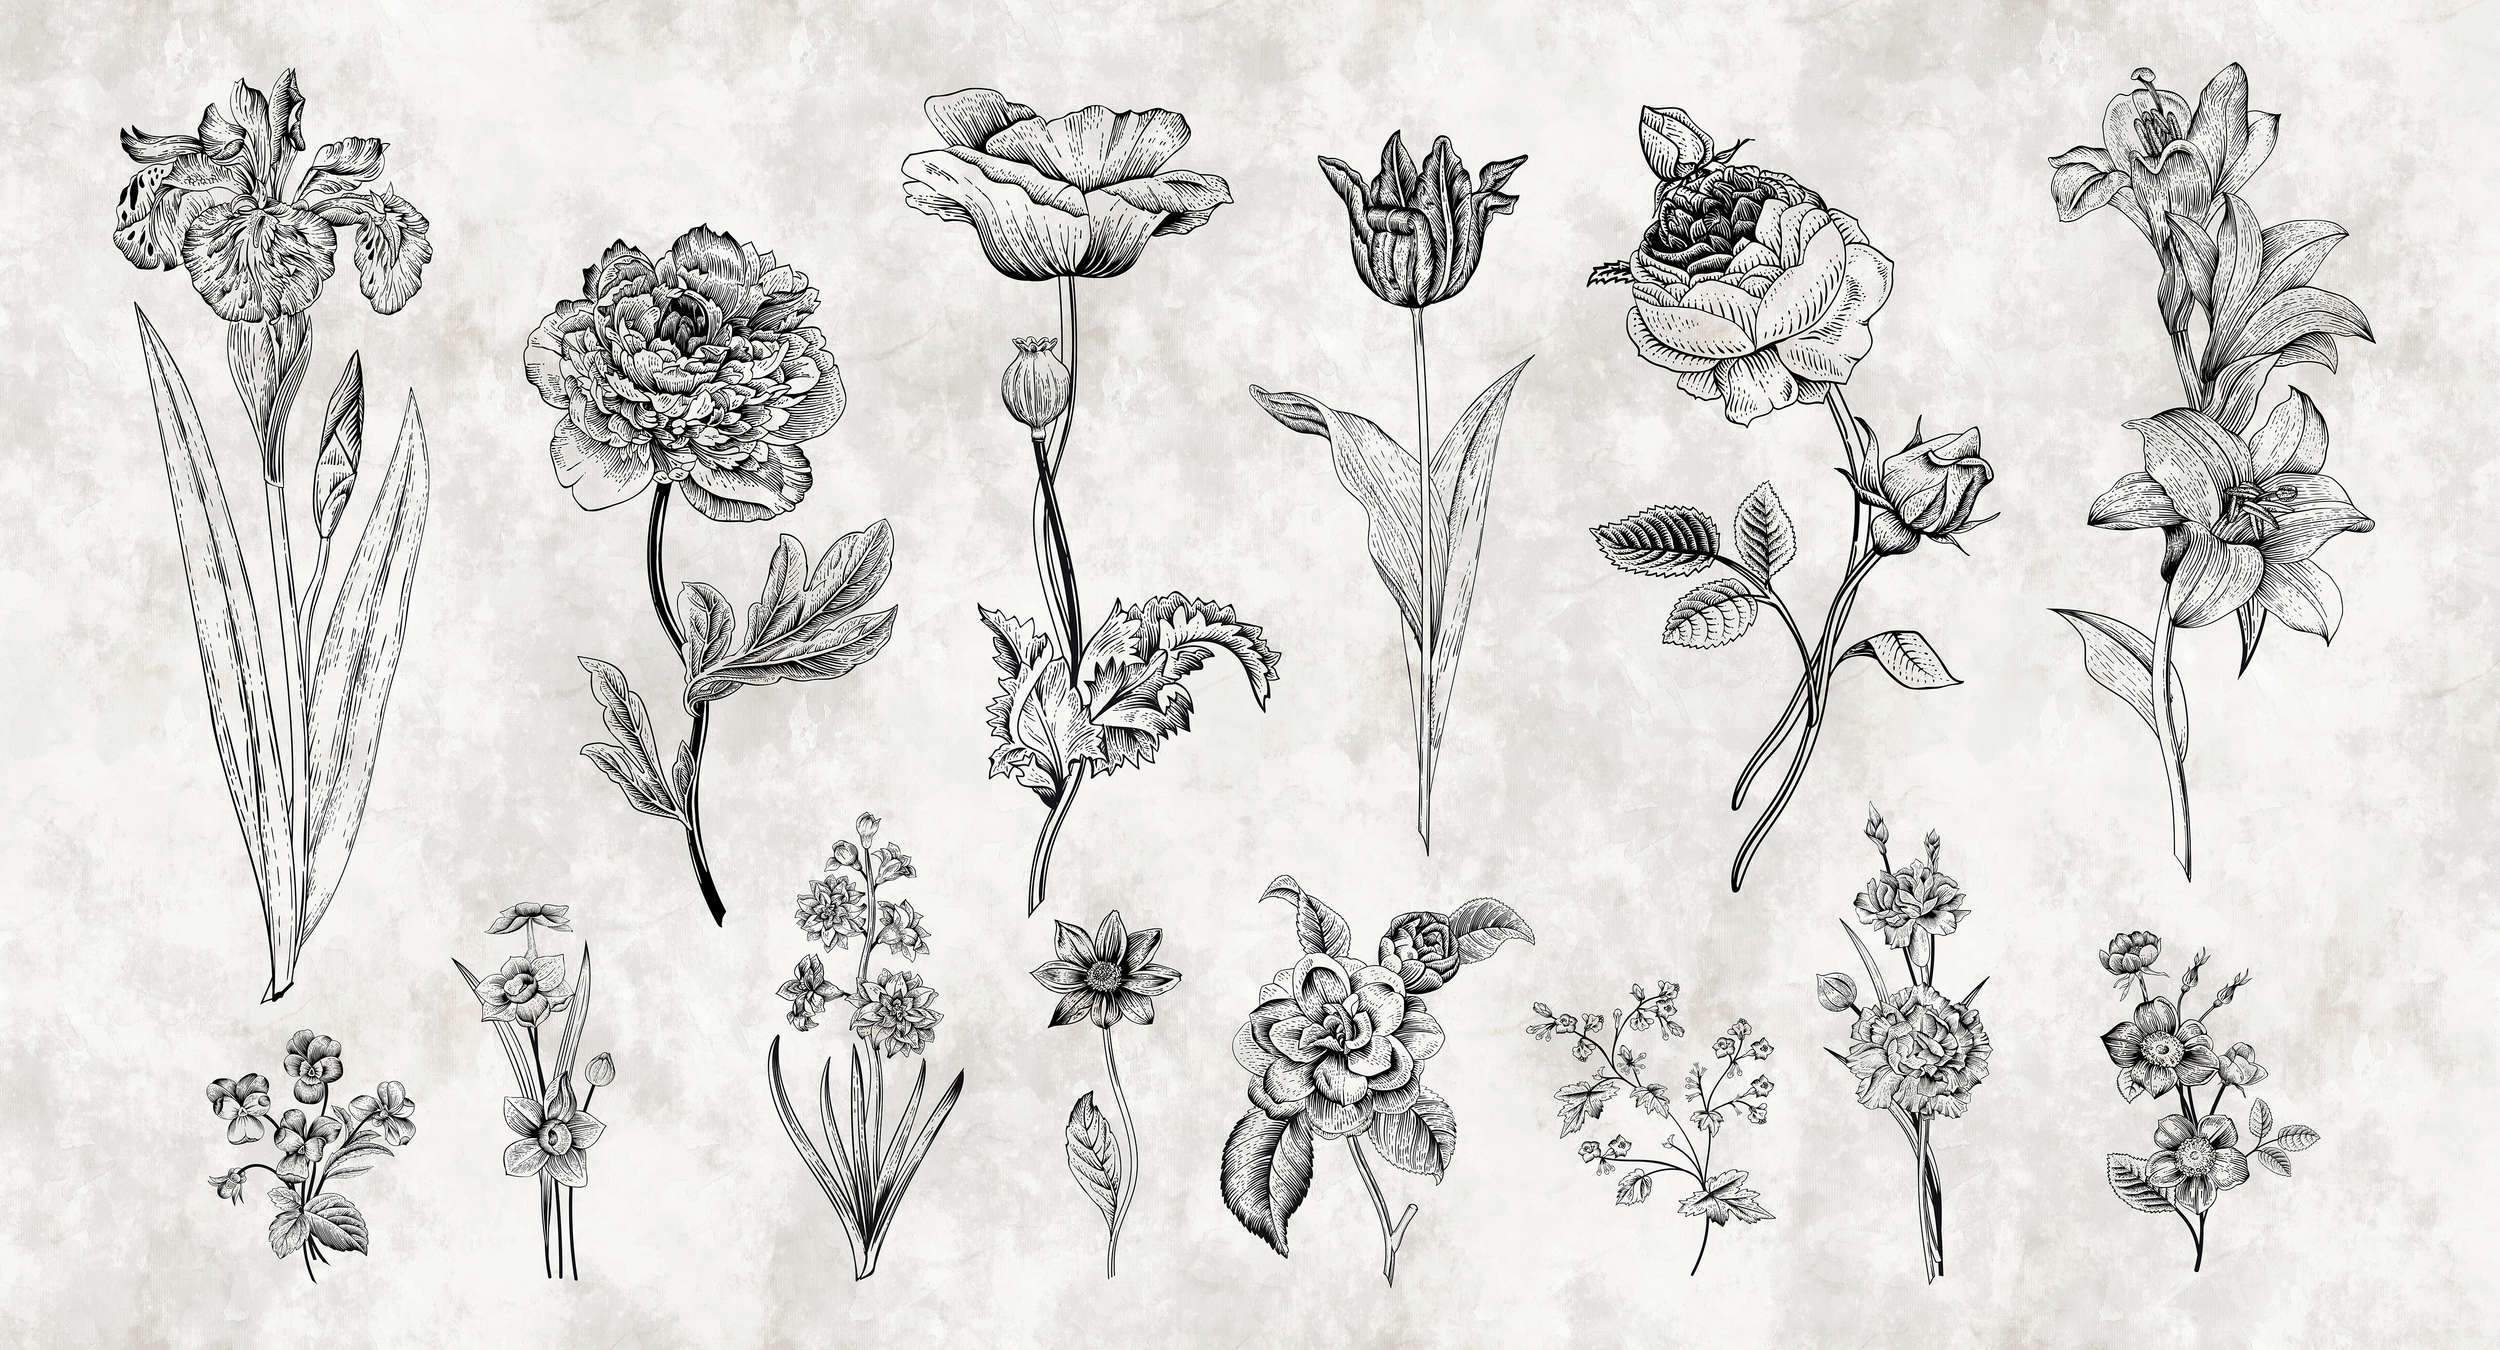             Fototapete Blumen im Zeichenstil – Weiß, Schwarz
        